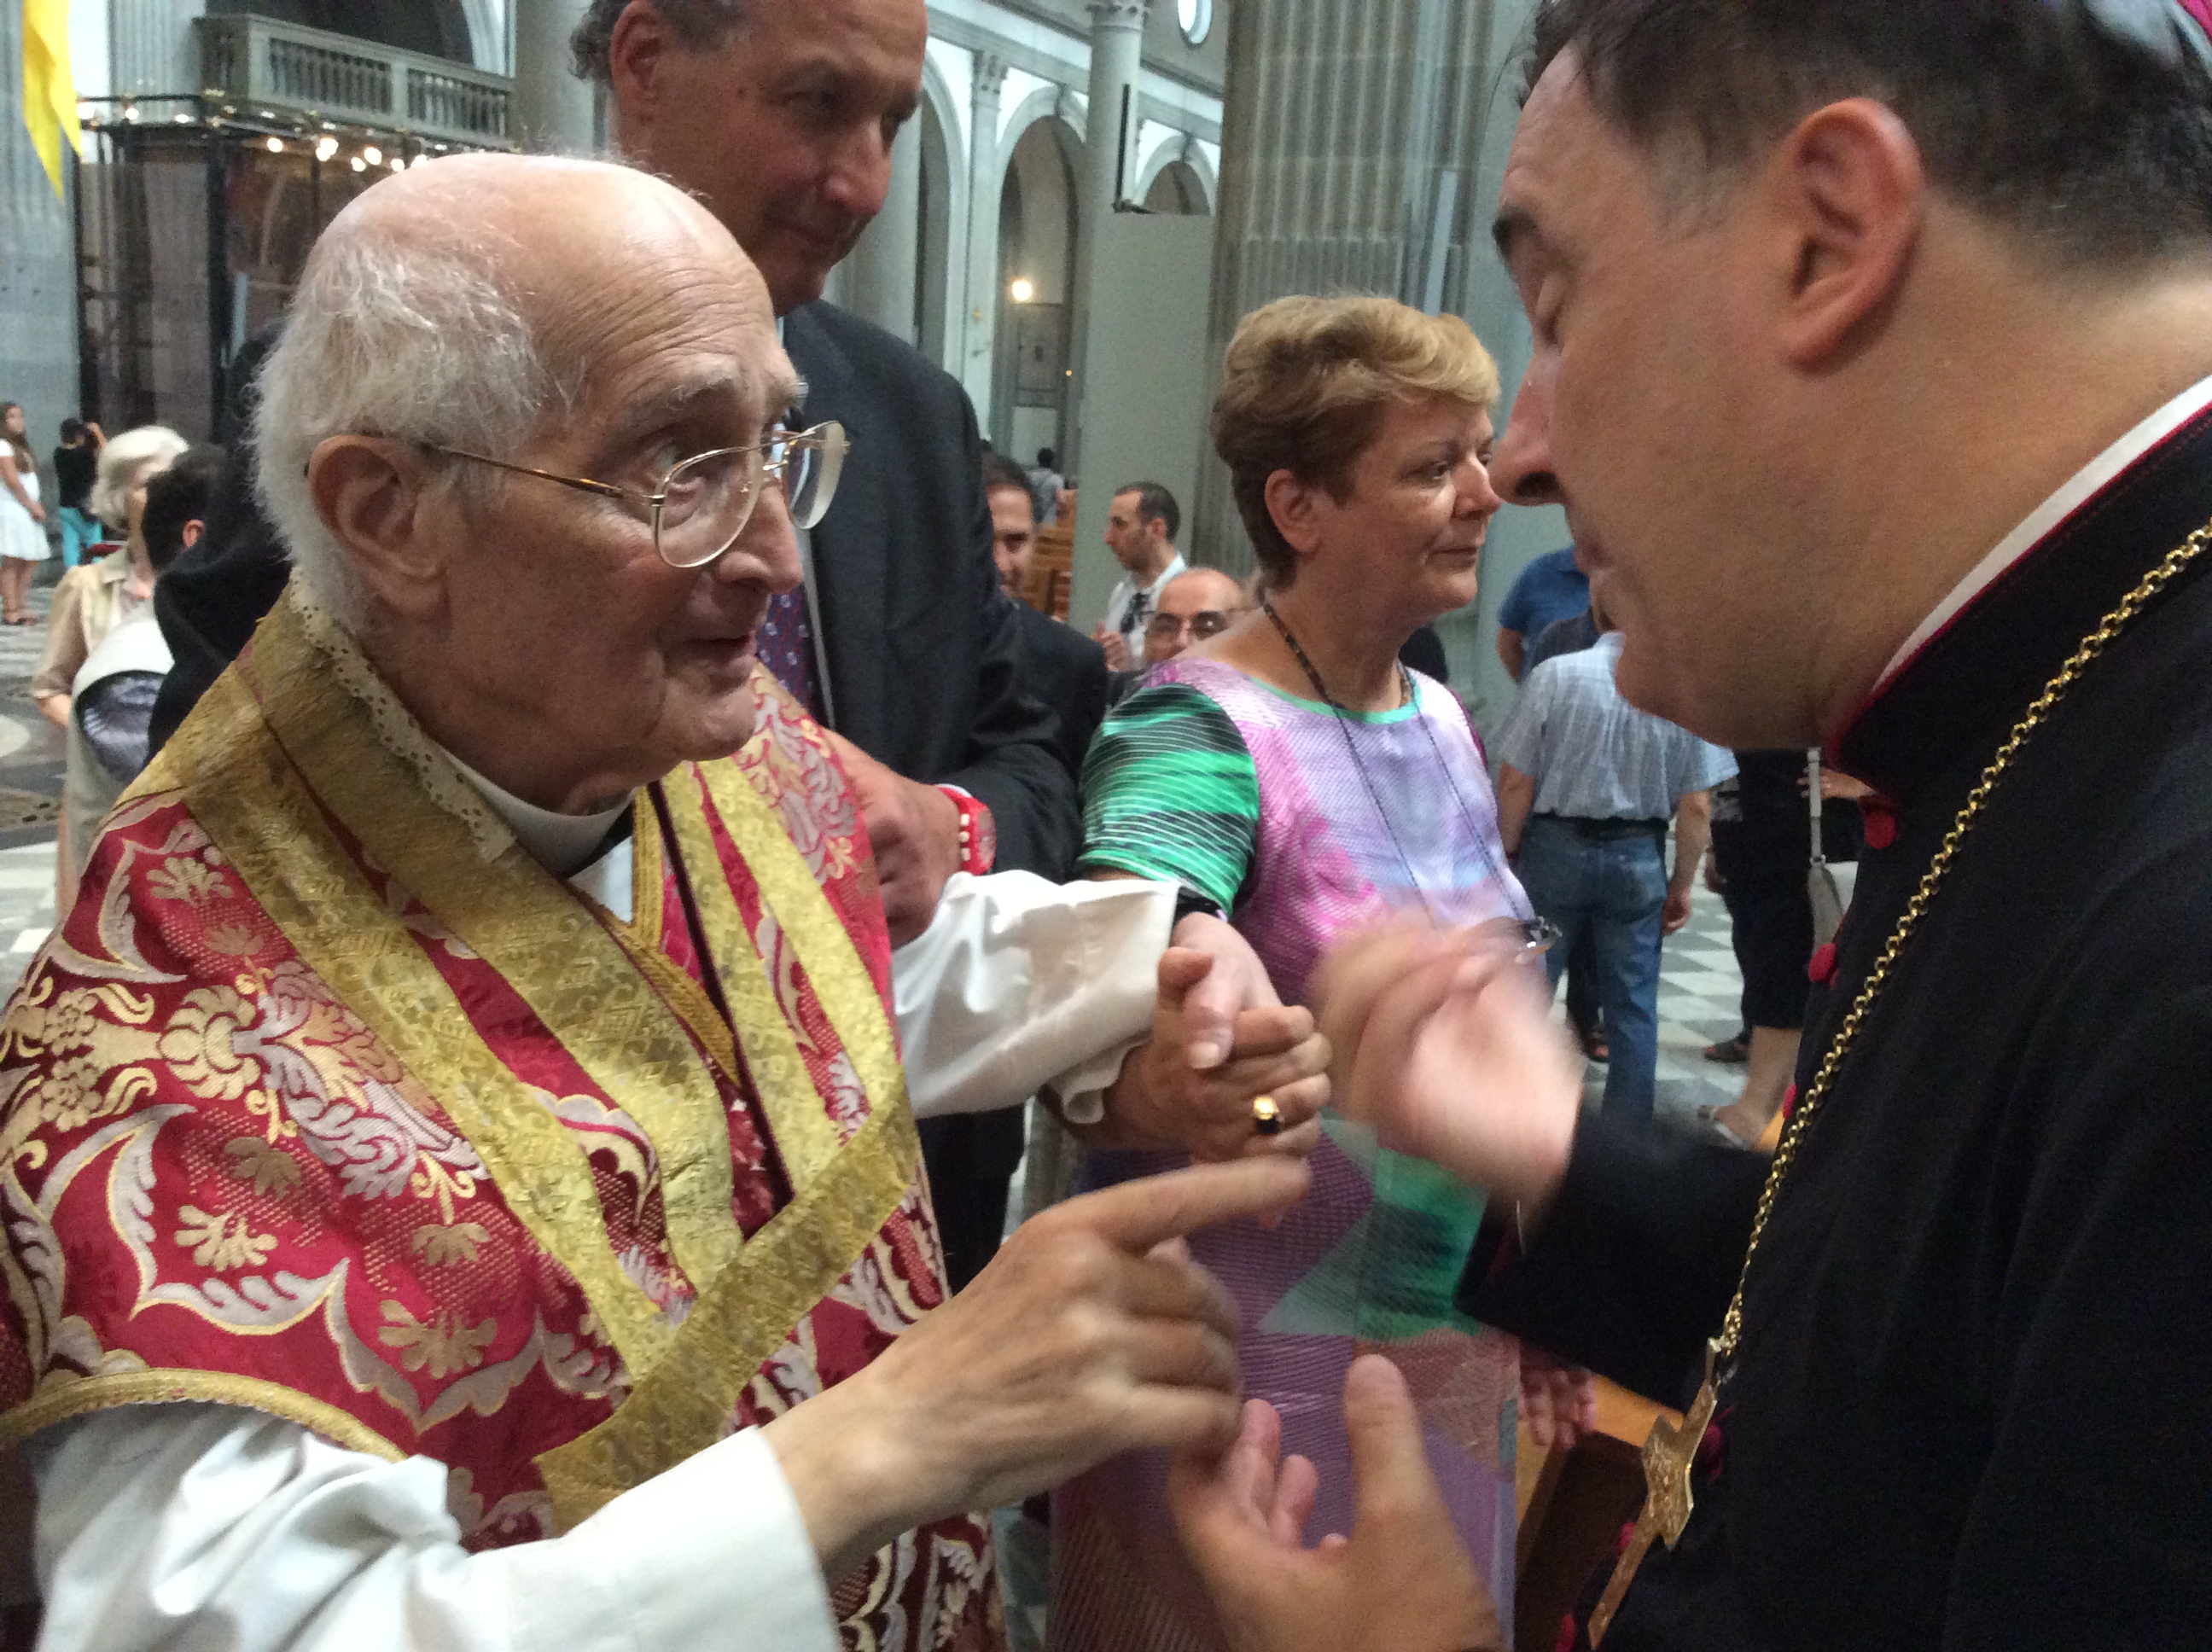 Vescovo Maniago con Mons Angiolo Livi  san lorenzo 2014 – foto giornalista Franco Mariani (2)